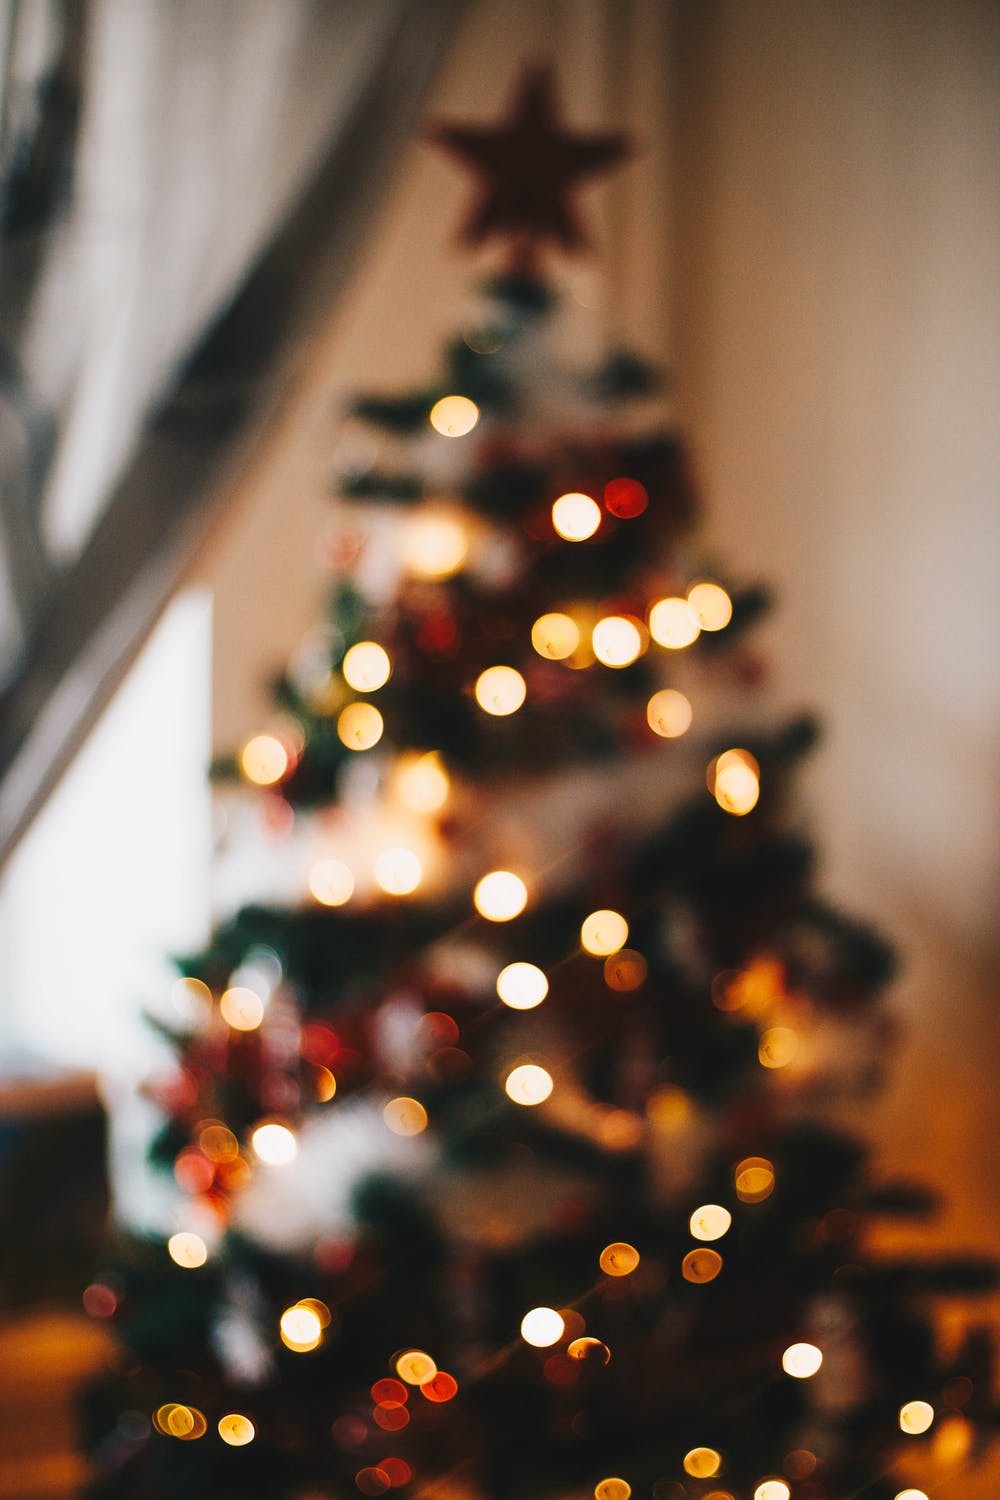 Tận hưởng những truyền thống Giáng Sinh truyền thống với cả gia đình bằng cách mua sắm quà tặng, trang trí nhà cửa và tham gia các nghi lễ tôn giáo. Việc làm này sẽ đem lại cho bạn và gia đình cảm giác gần gũi và đầy hạnh phúc trong dịp đặc biệt này.